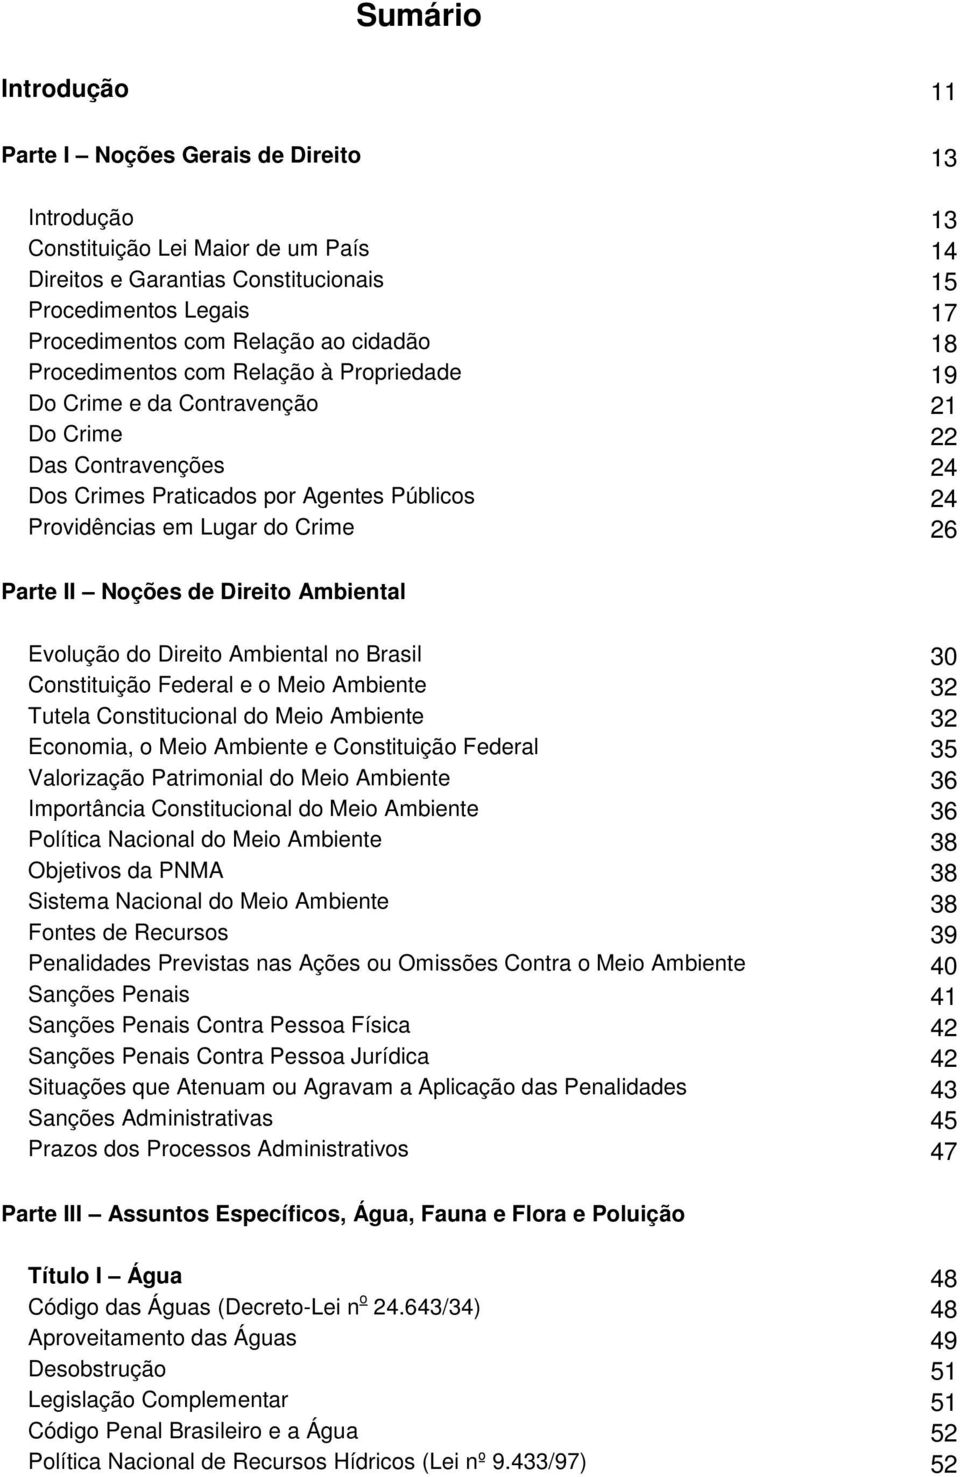 Parte II Noções de Direito Ambiental Evolução do Direito Ambiental no Brasil 30 Constituição Federal e o Meio Ambiente 32 Tutela Constitucional do Meio Ambiente 32 Economia, o Meio Ambiente e